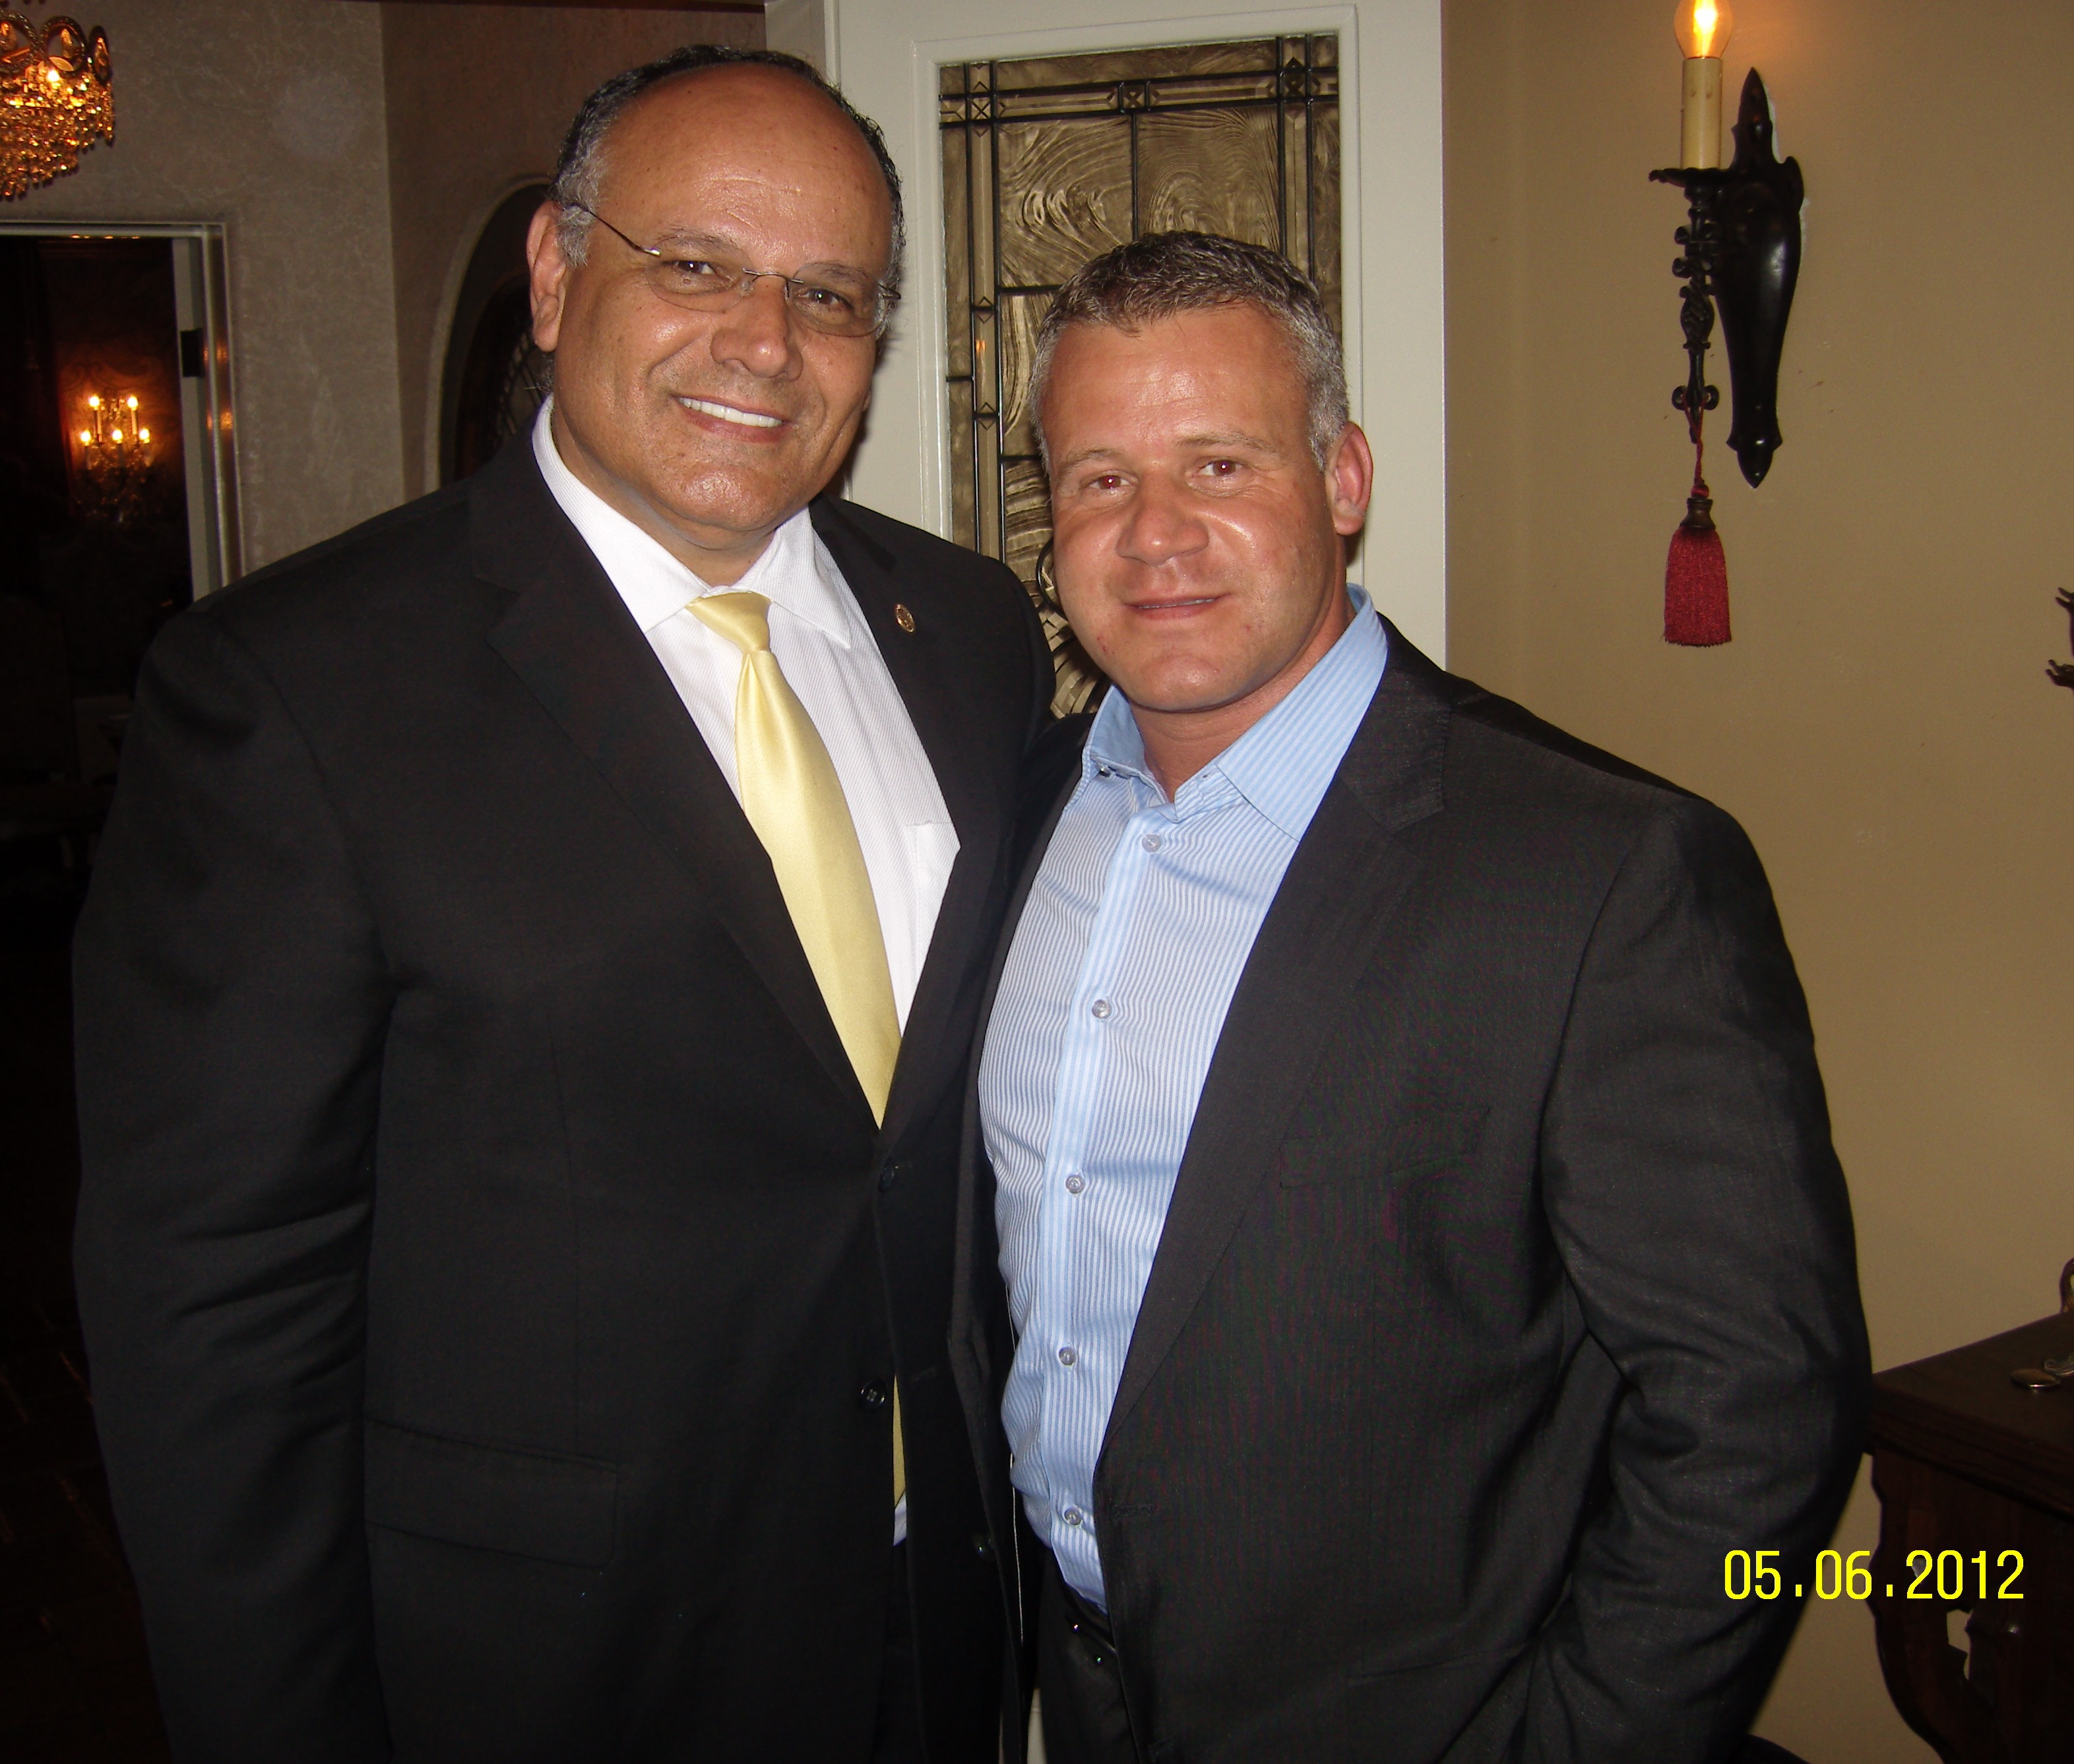 Zoltan Kovacs and Paul Leon Ontario's Mayor